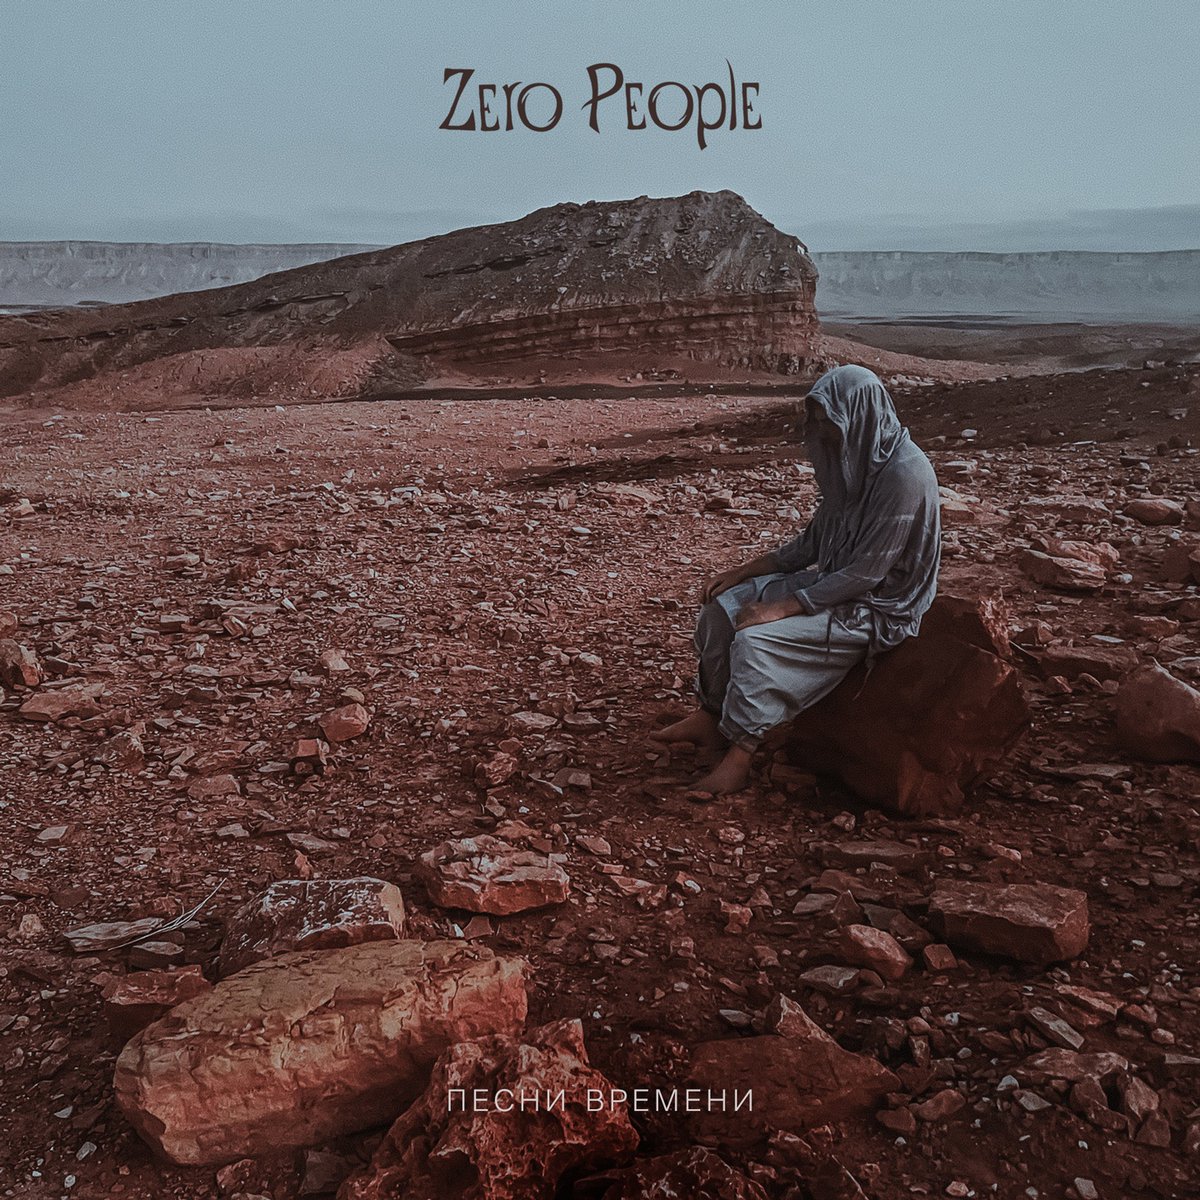 Новый альбом @zero_people, предзаказ 16 октября, релиз 30 октября. Даты и билеты здесь:
zeropeople.ru